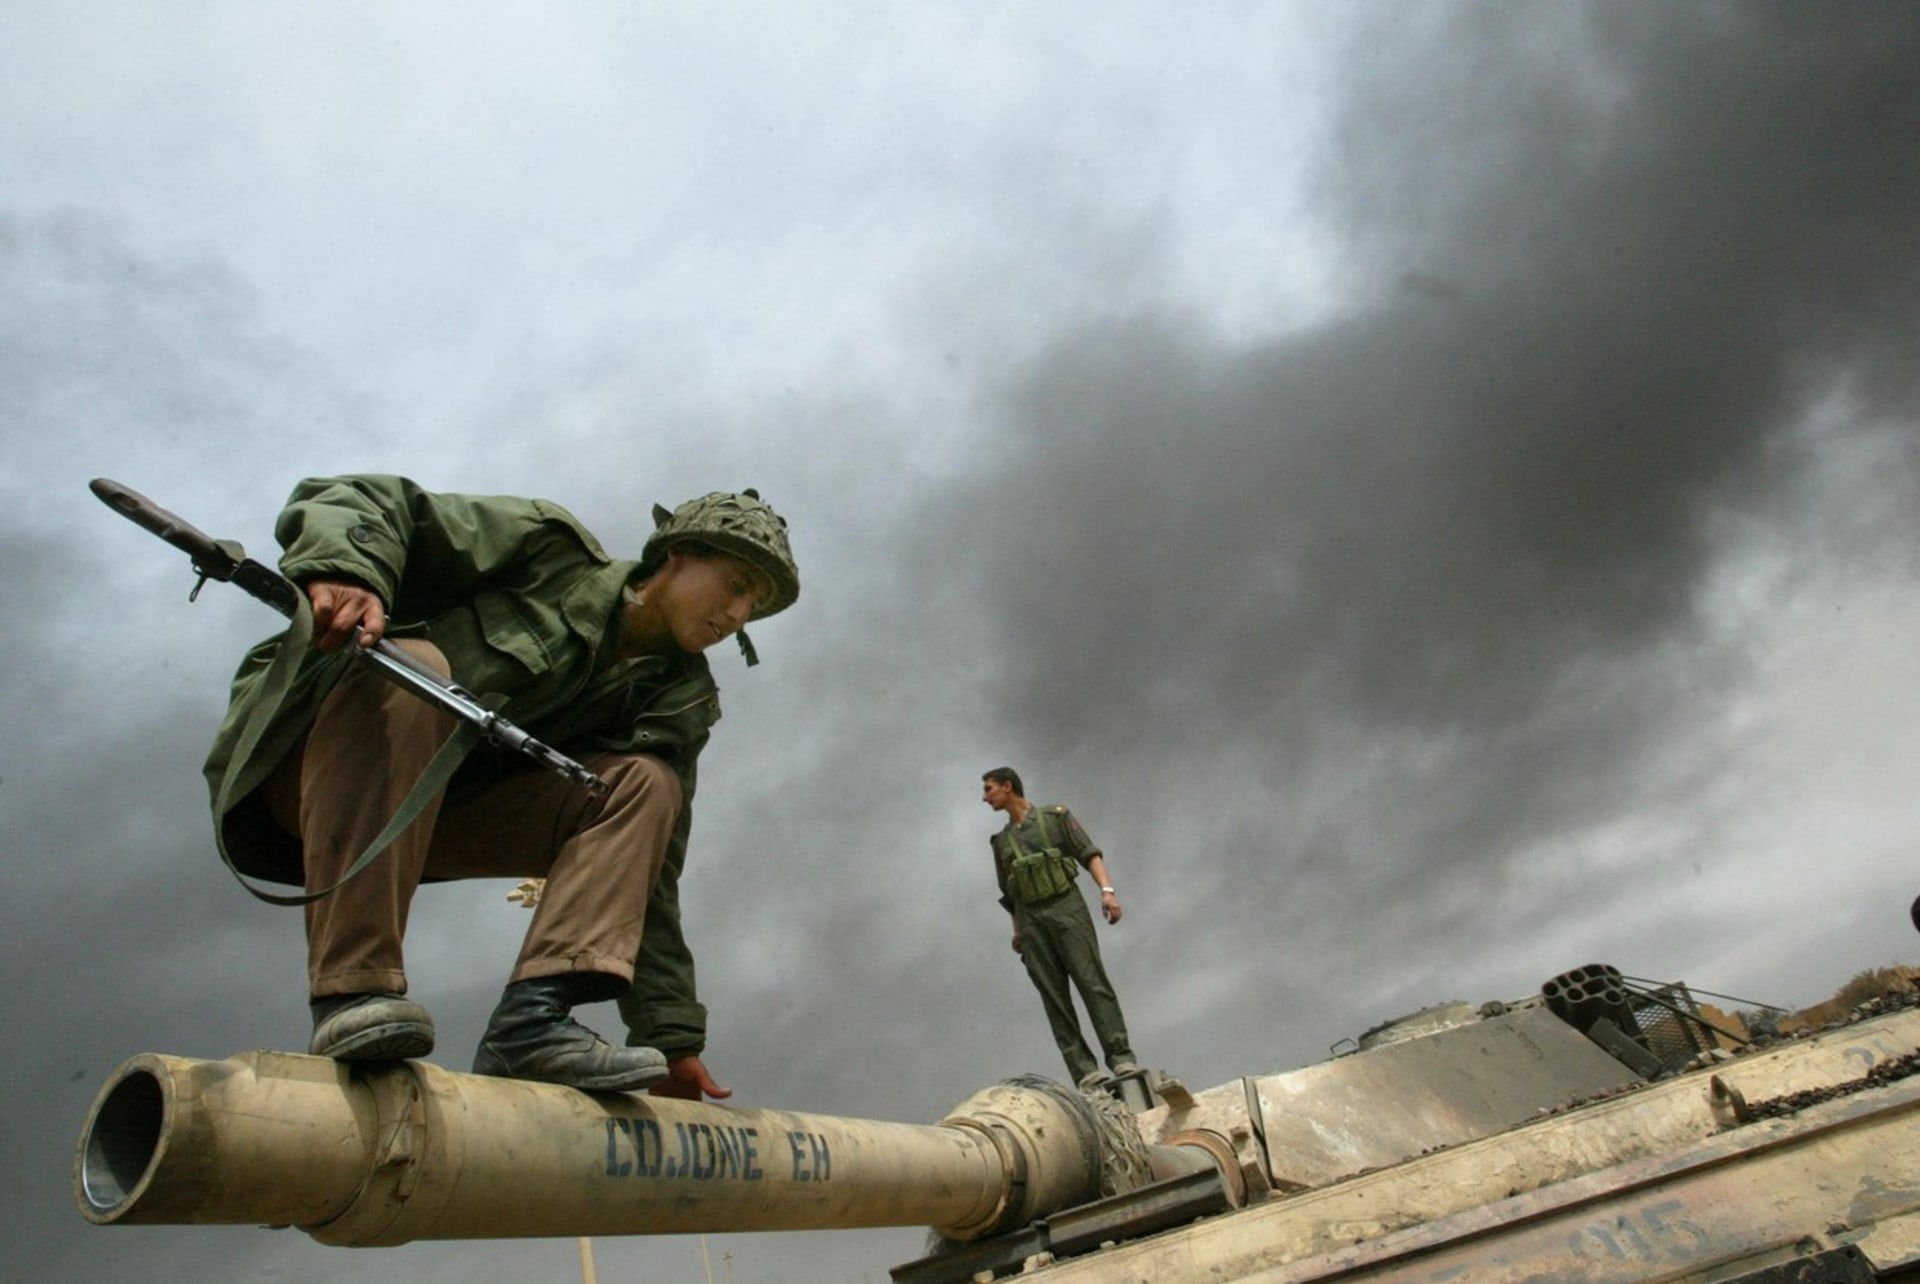 Příslušník irácké milice skáče z hlavně tanku M1A2 Abrams zničeného během těžkých bojů na okraji Bagdádu v roce 2003